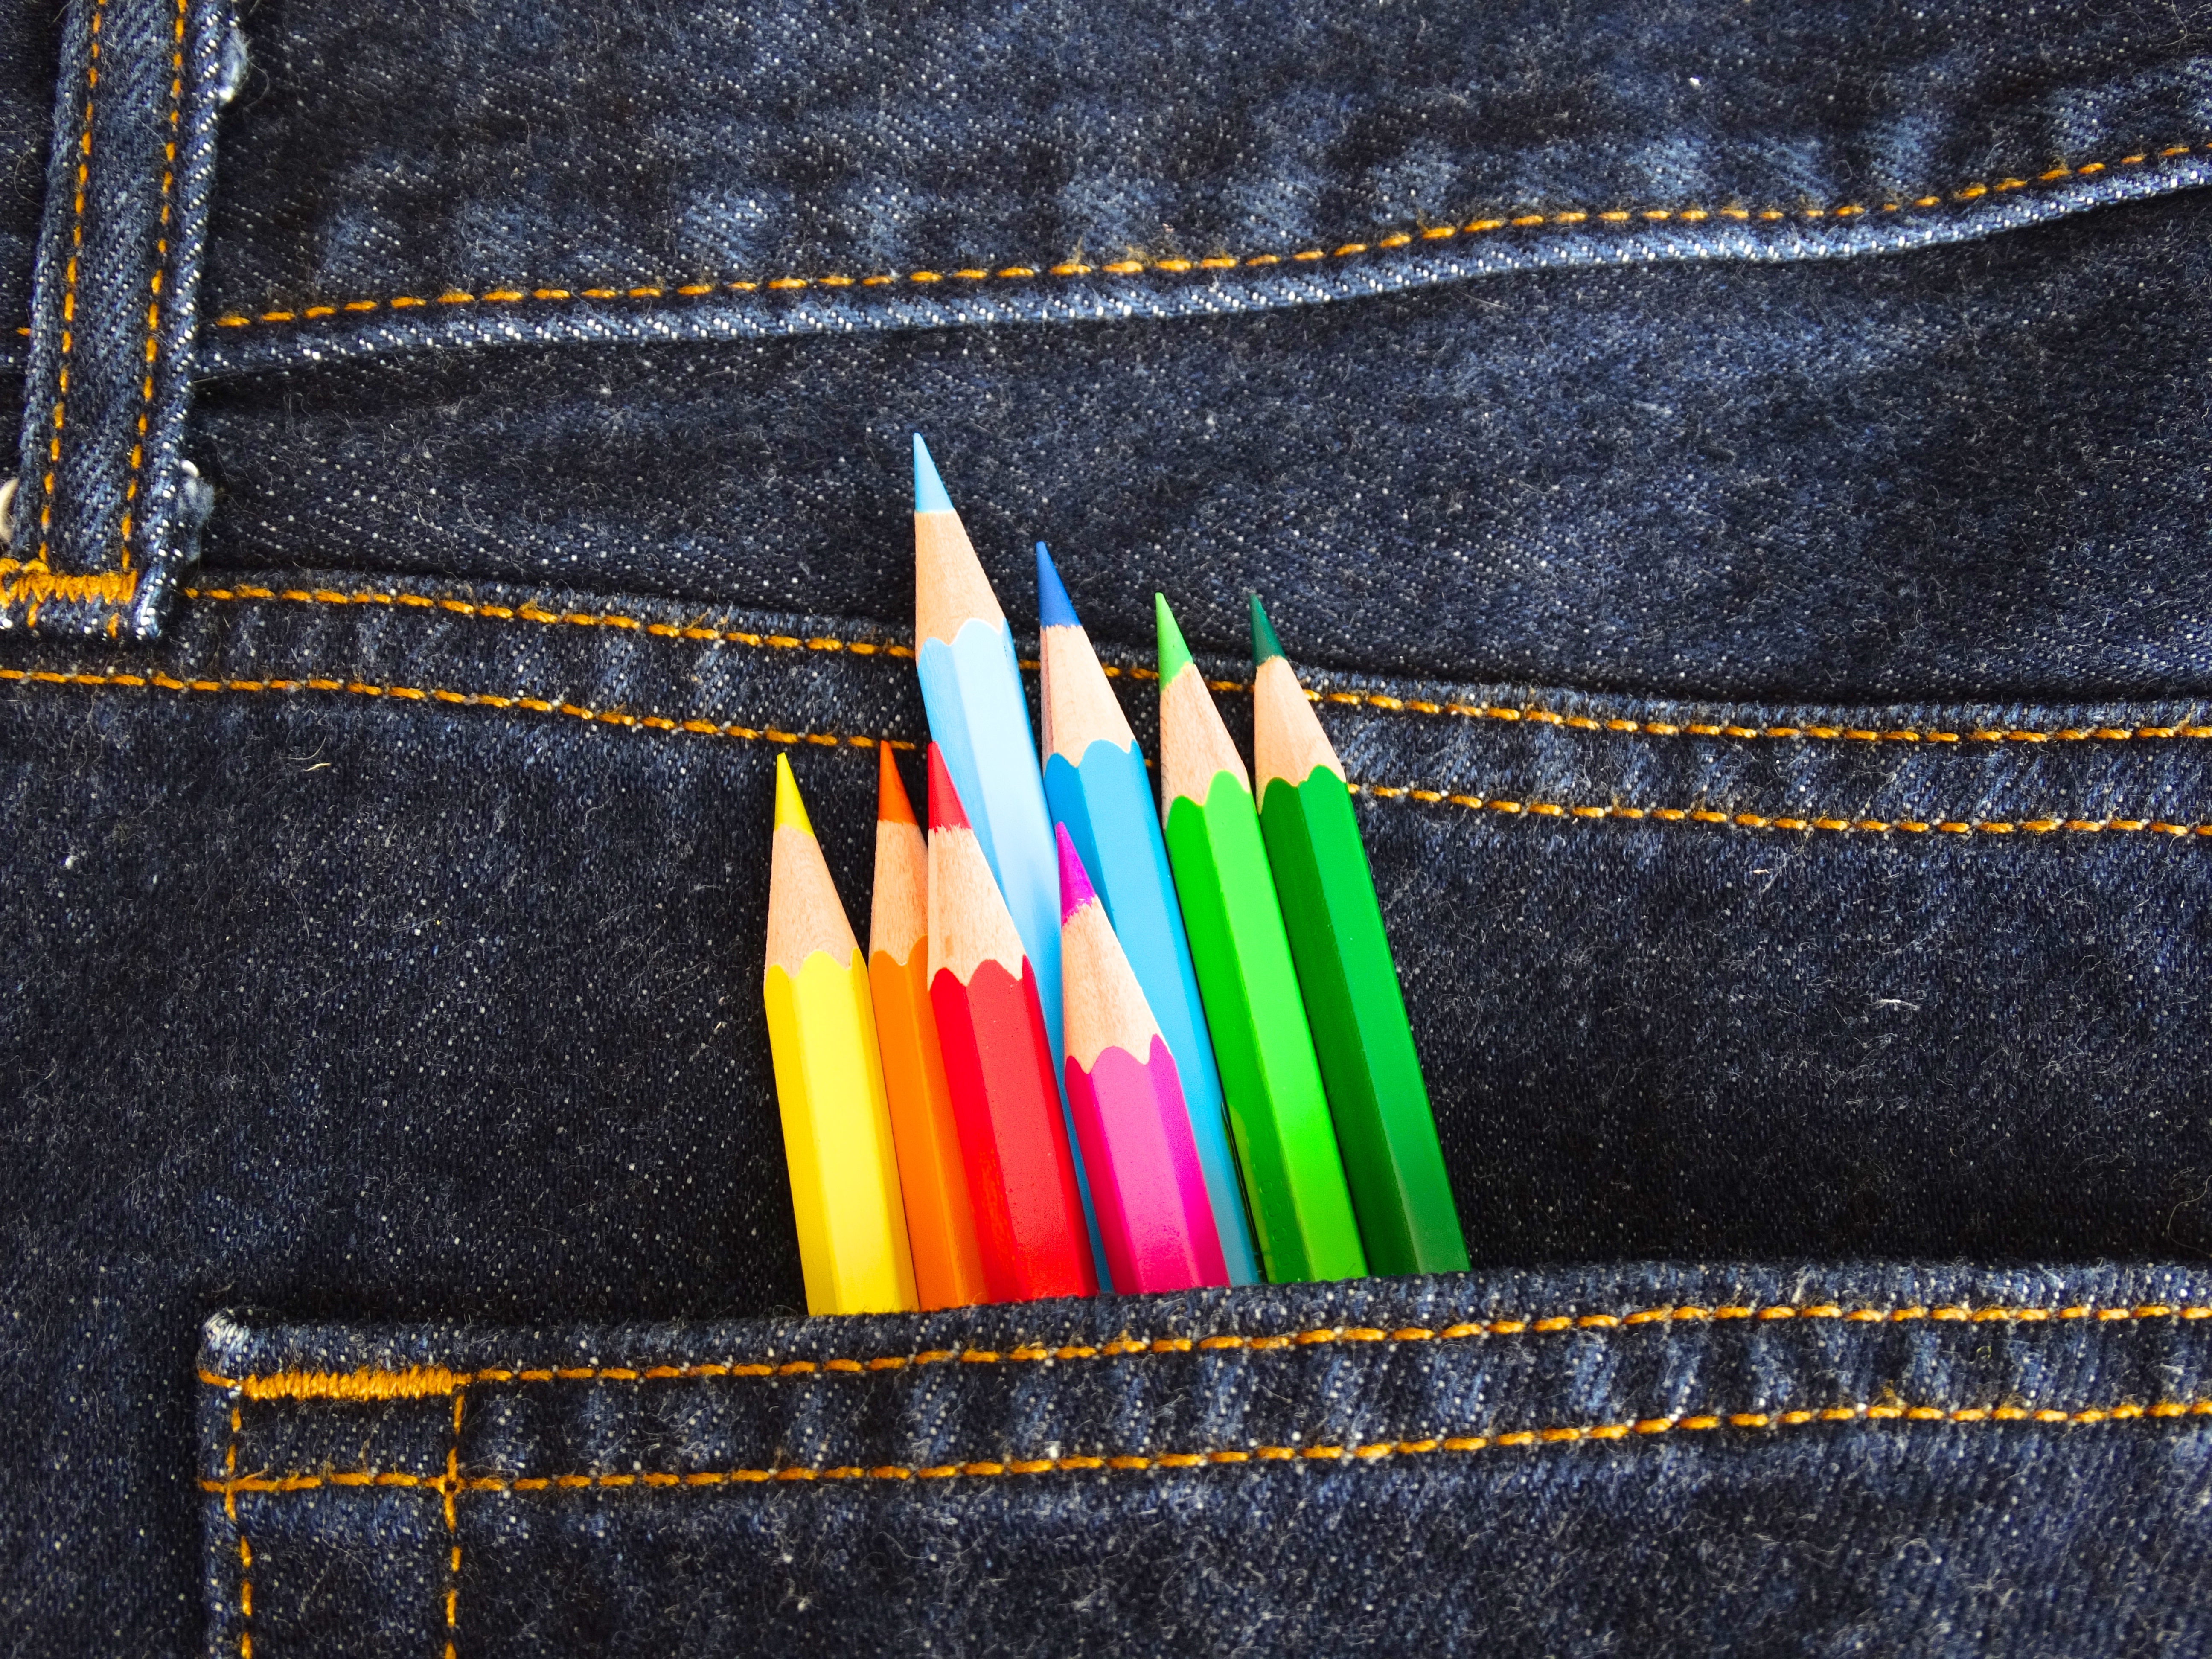 Bright colored pencils